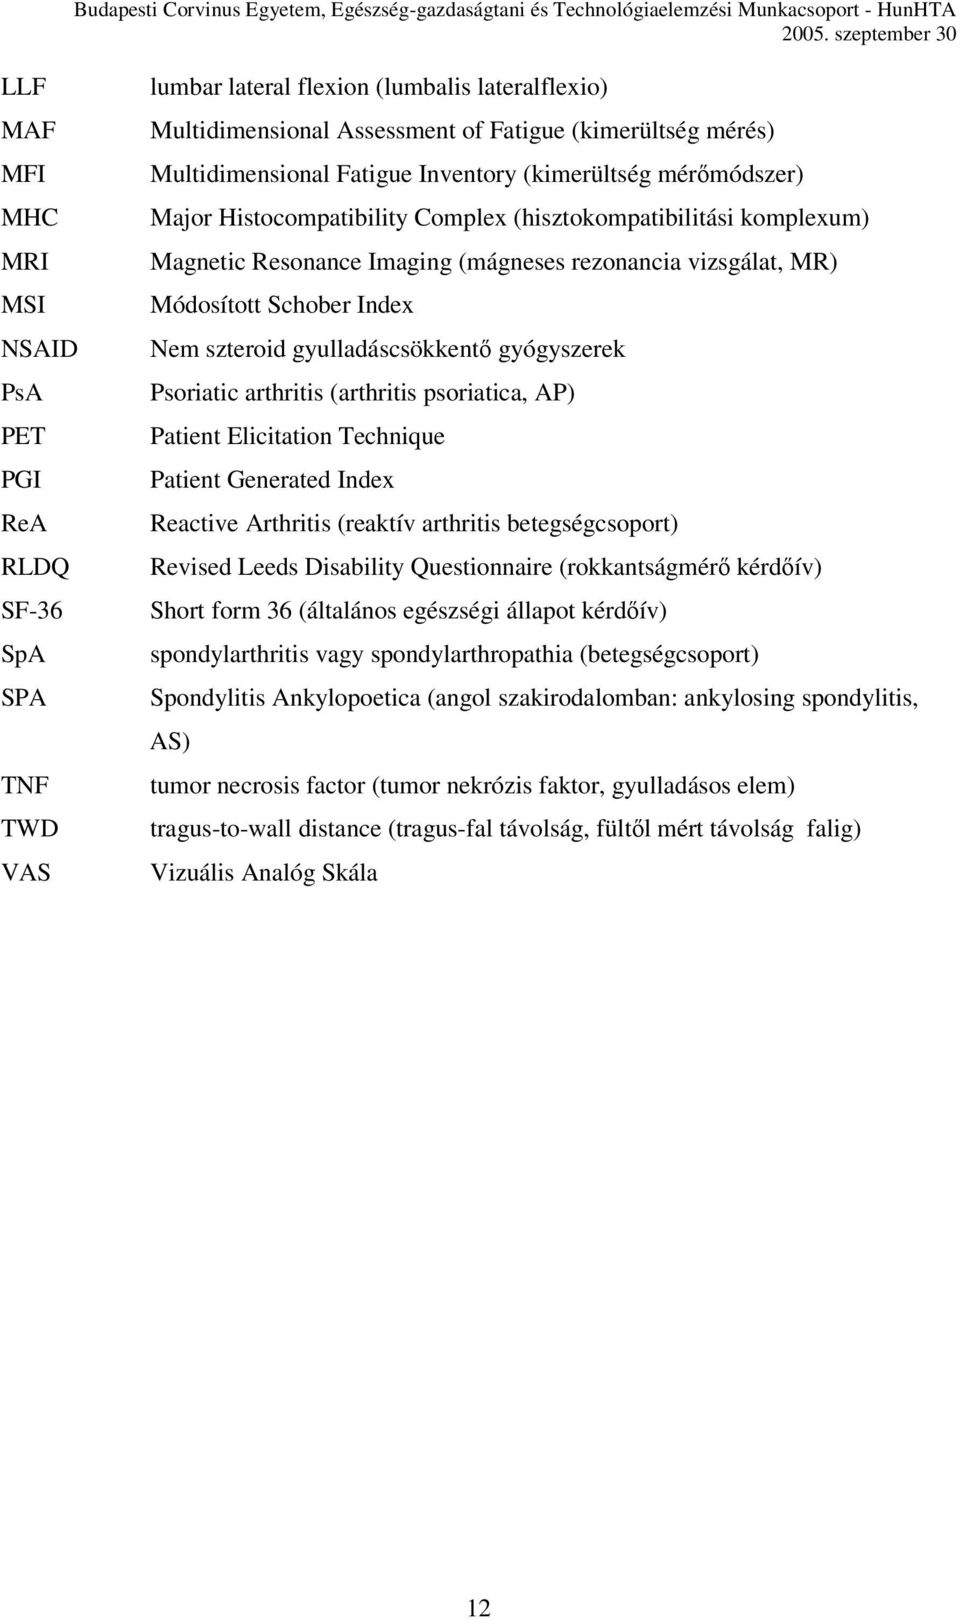 Módosított Schober Index Nem szteroid gyulladáscsökkentő gyógyszerek Psoriatic arthritis (arthritis psoriatica, AP) Patient Elicitation Technique Patient Generated Index Reactive Arthritis (reaktív